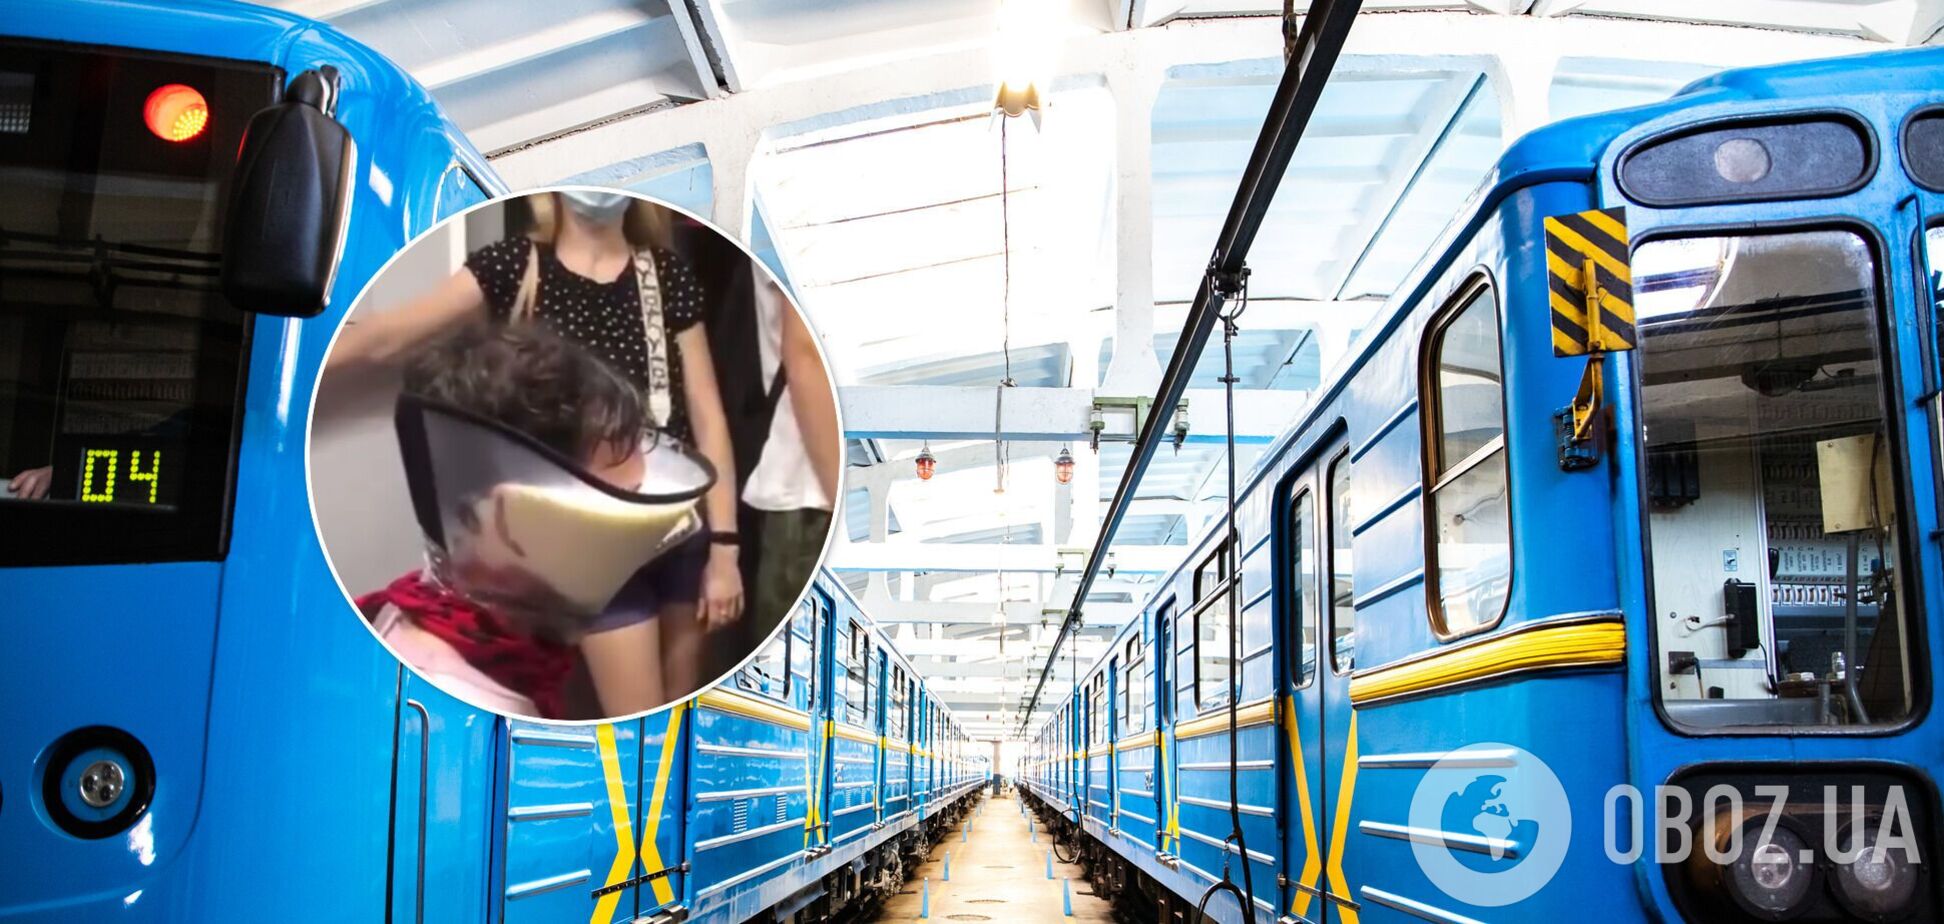 Скандал із блогерами в київському метро